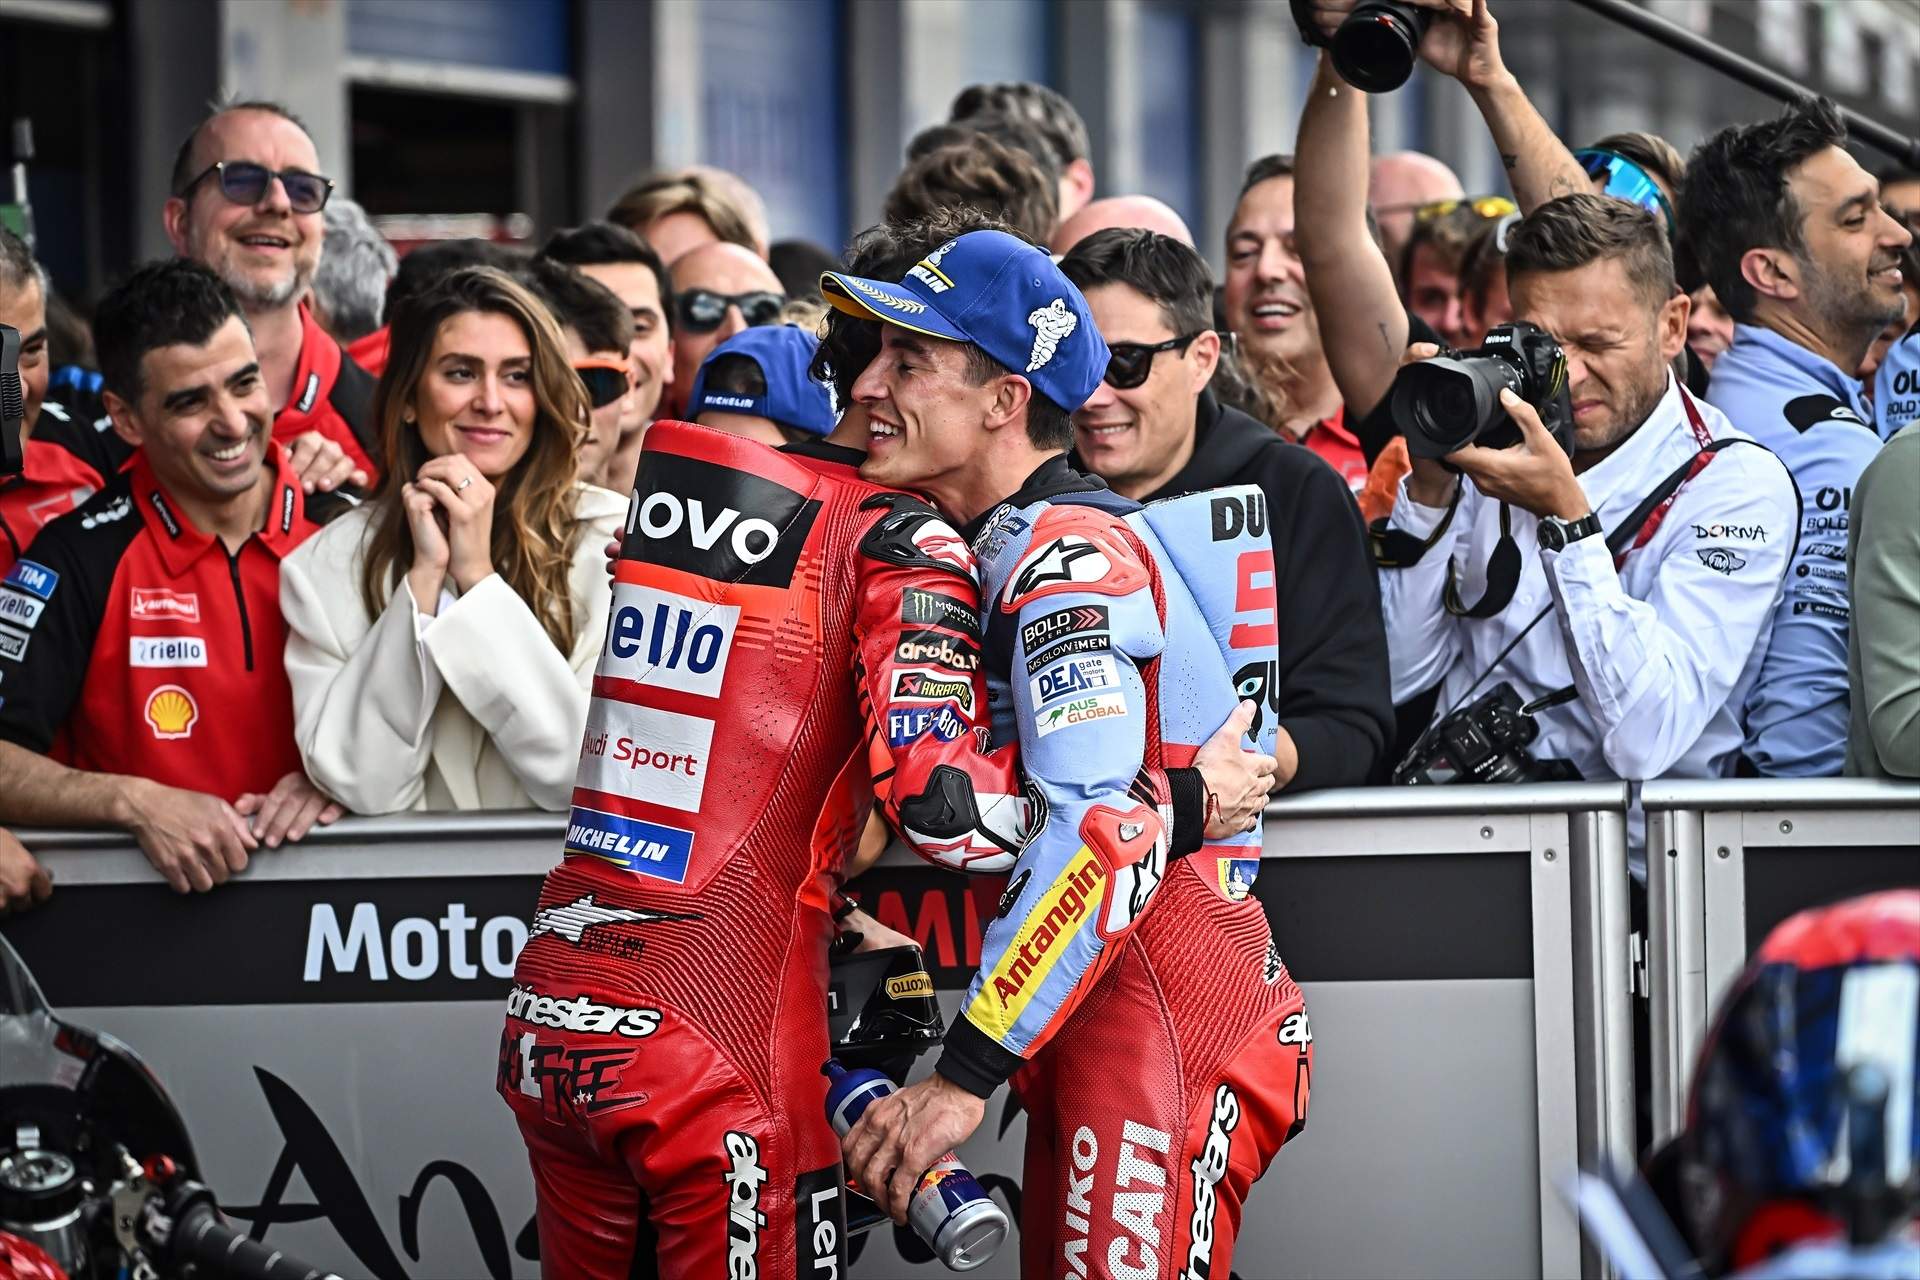 Destapada la jugada de Ducati con Marc Márquez, 2 traiciones